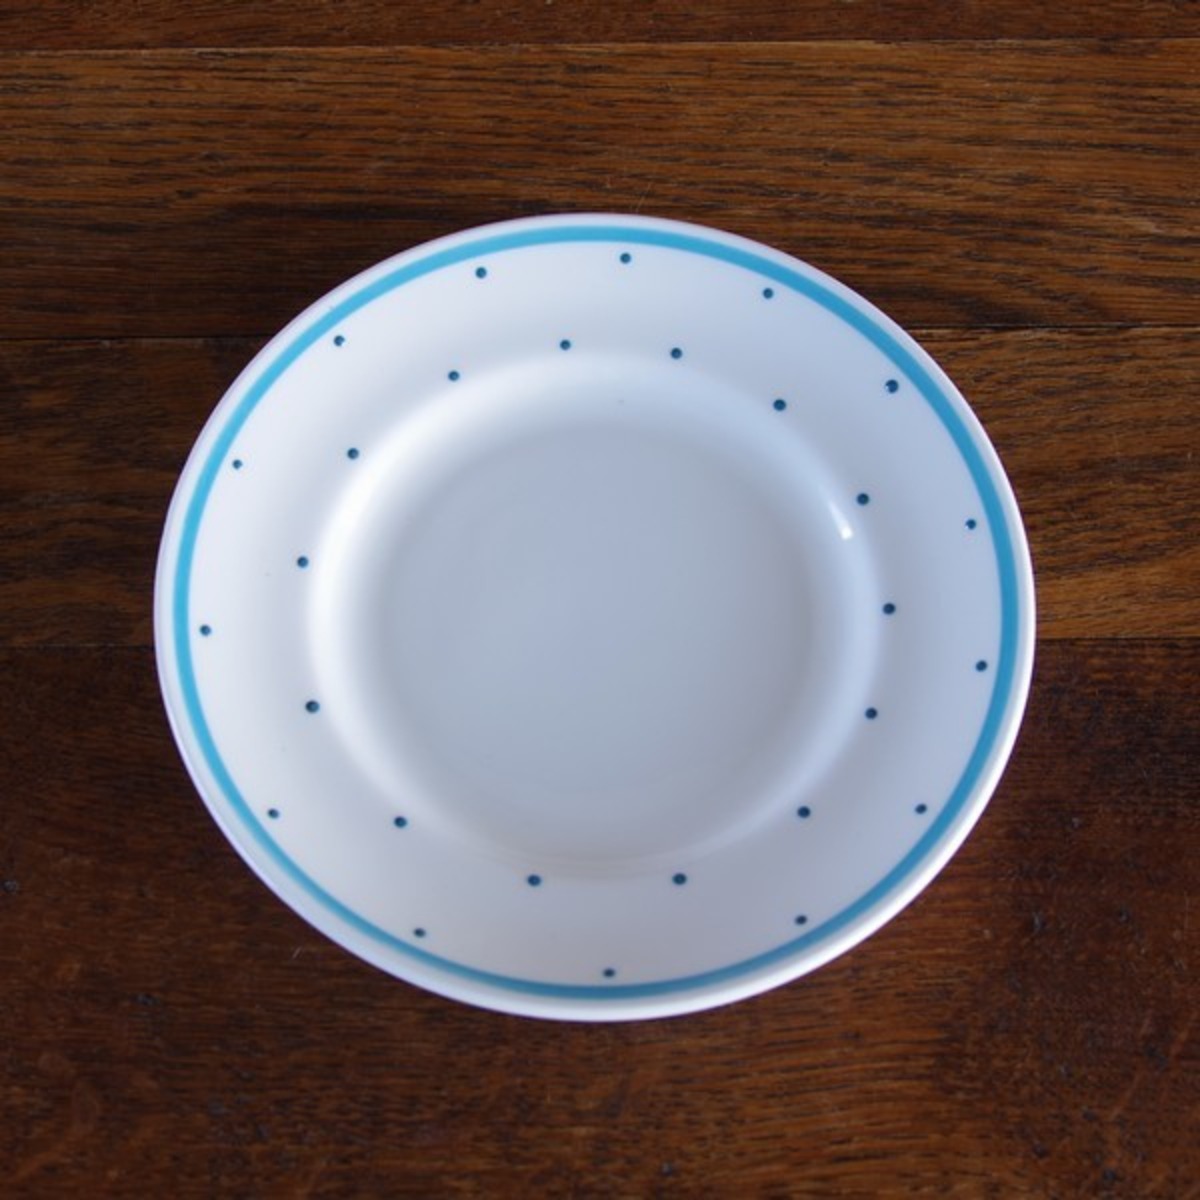 アンティーク食器 スージークーパー ブルーグリーン ポルカドット 水玉柄 ケーキ皿 16cm #180510-4 ヴィンテージ デザート